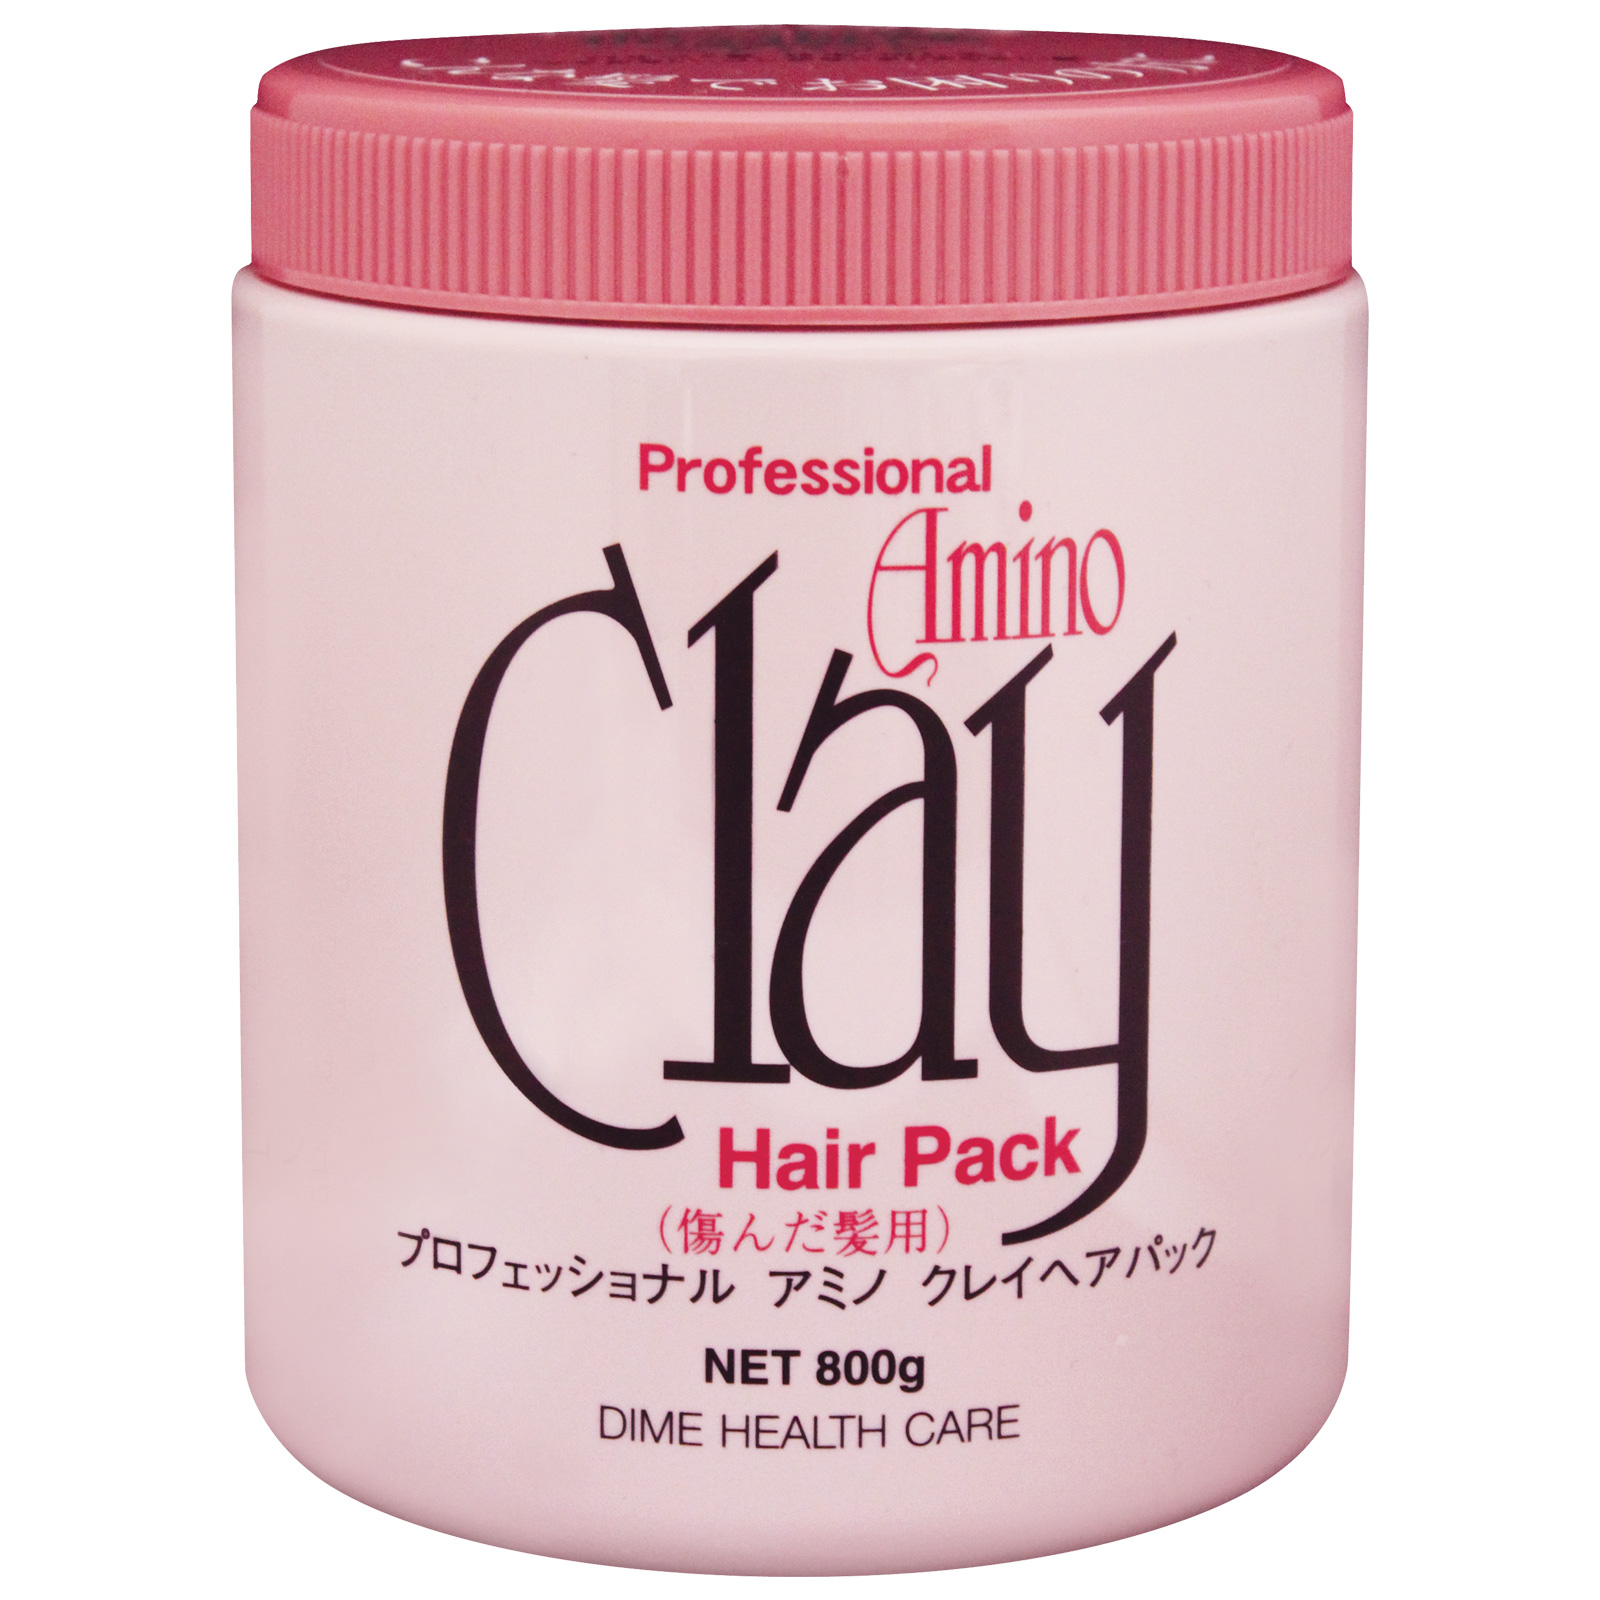 Dime Health Care Professional Amino Clay Hair Pack. Профессиональная маска для поврежденных волос на основе аминокислот и глины Дайм Хелф Кэар, 800 г